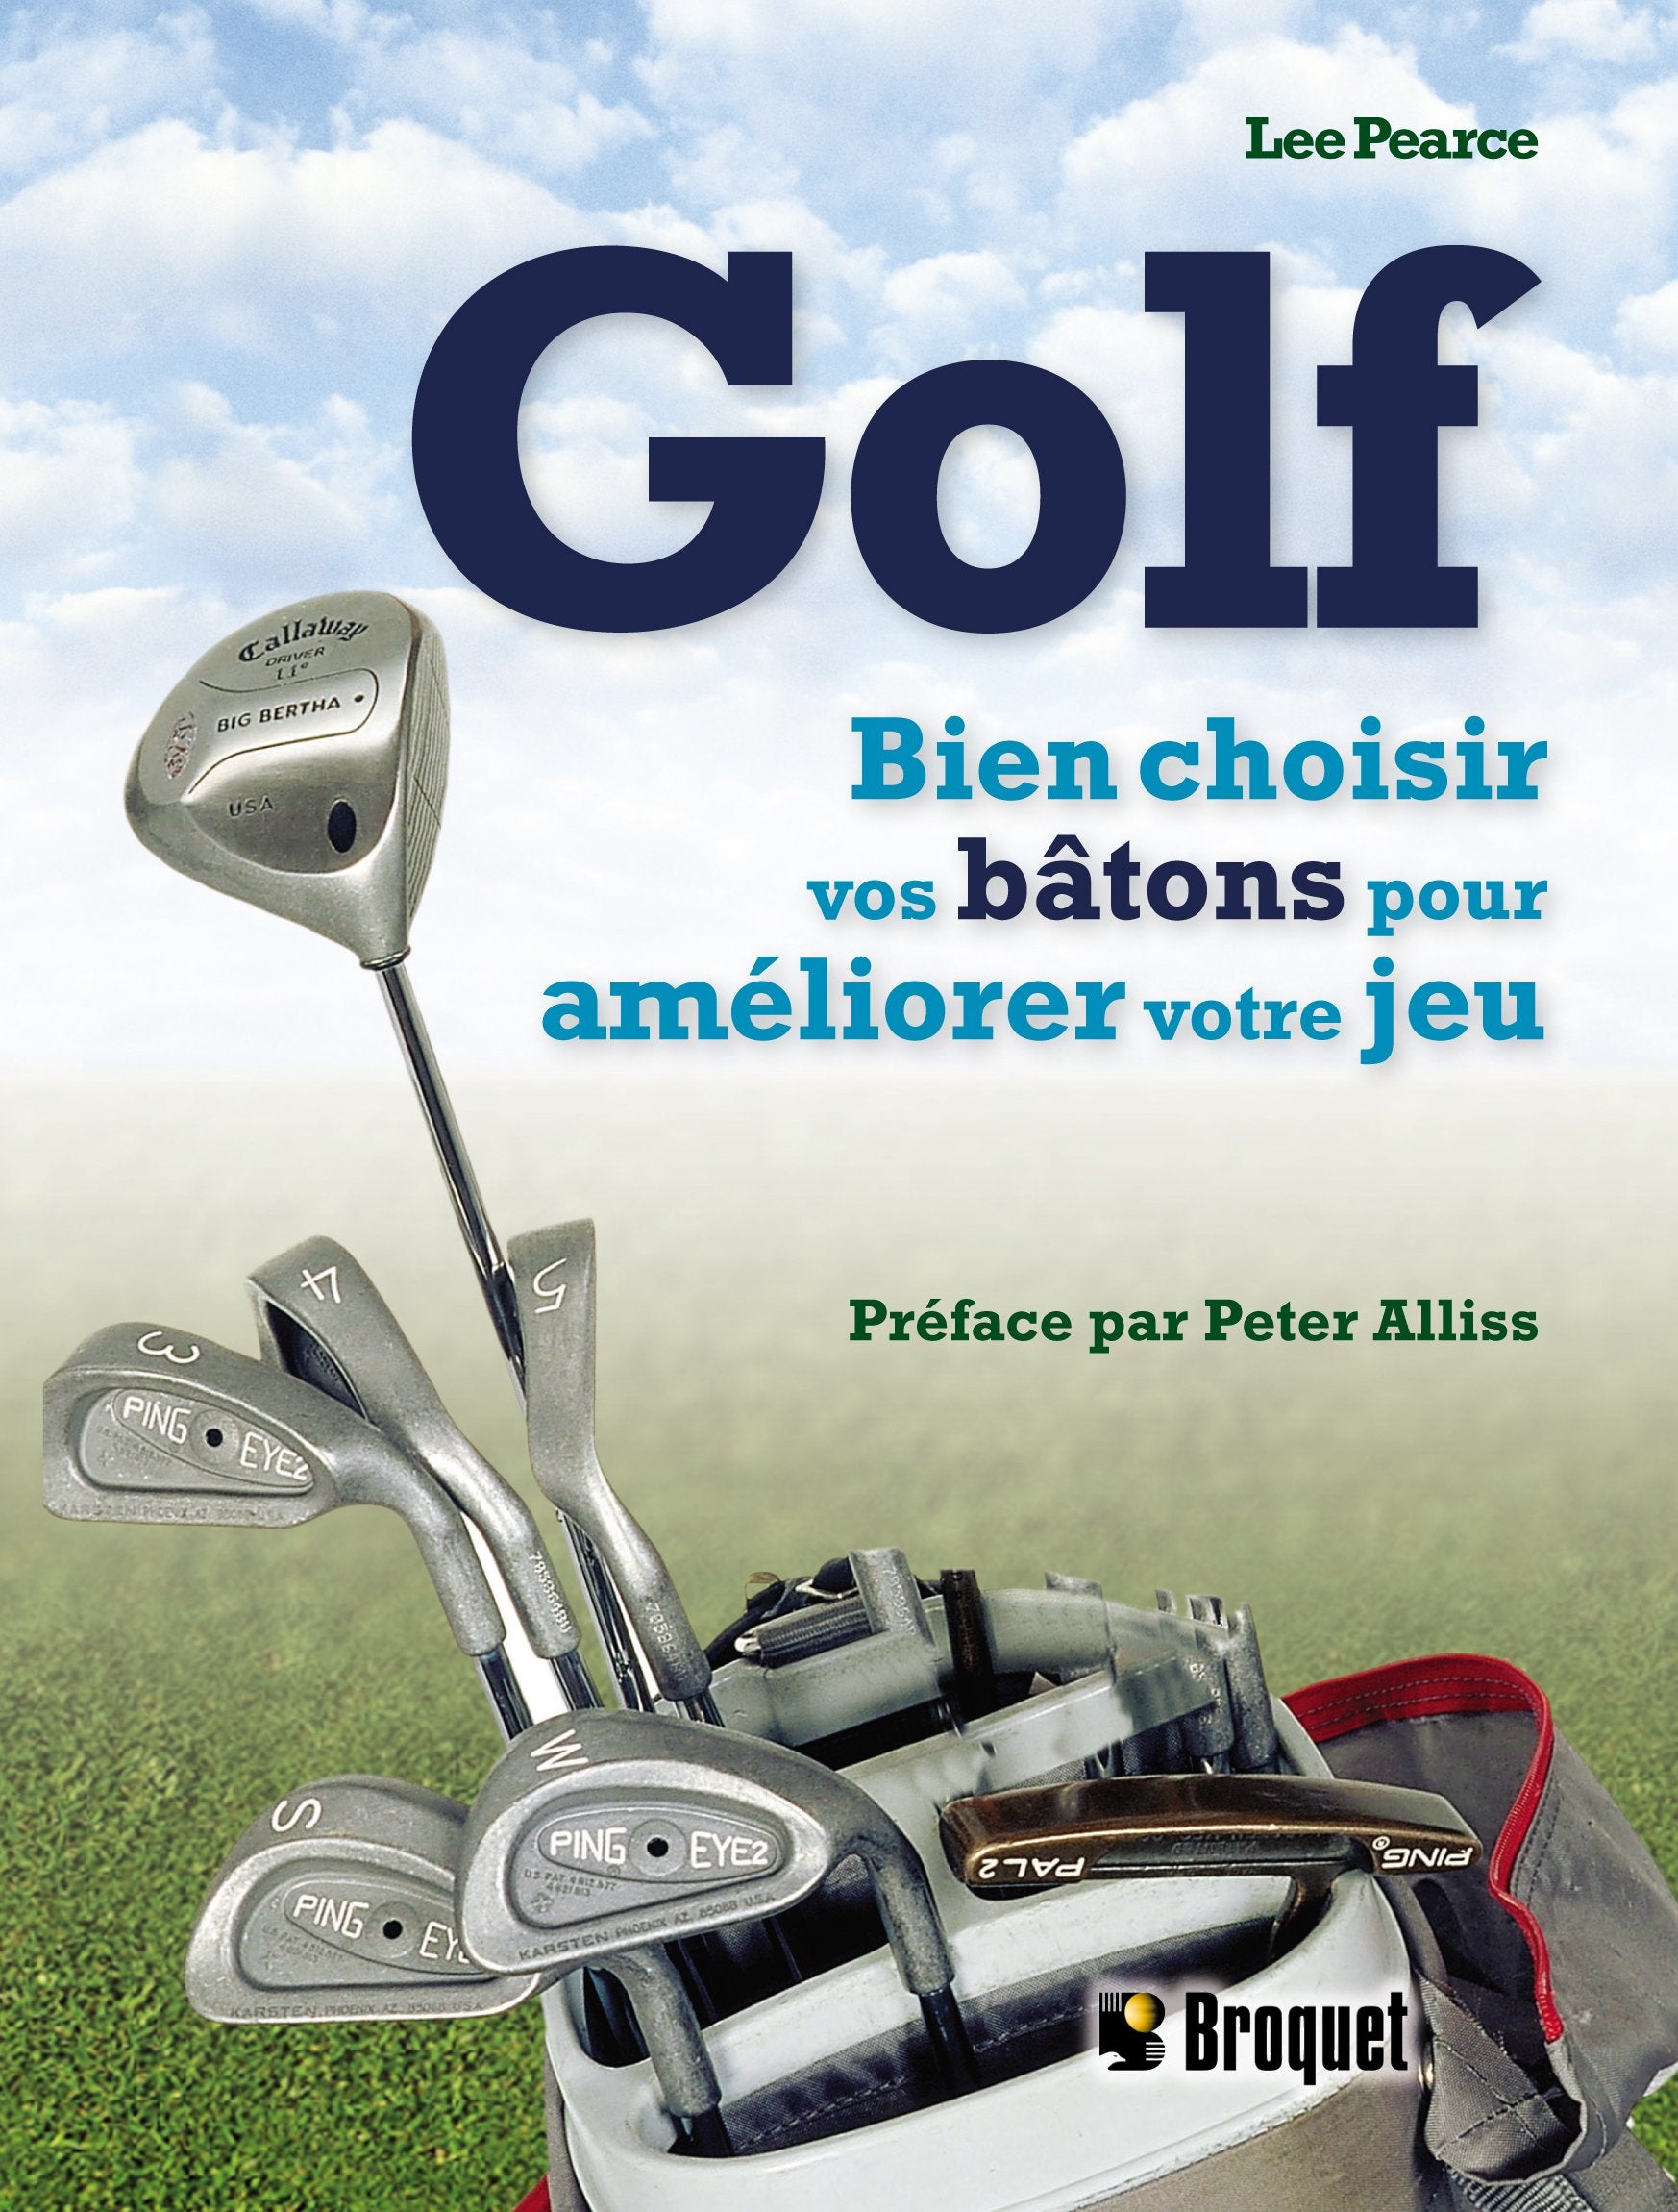 Golf : Bien choisir vos bâtons pour améliorer votre jeu - Lee Pearce